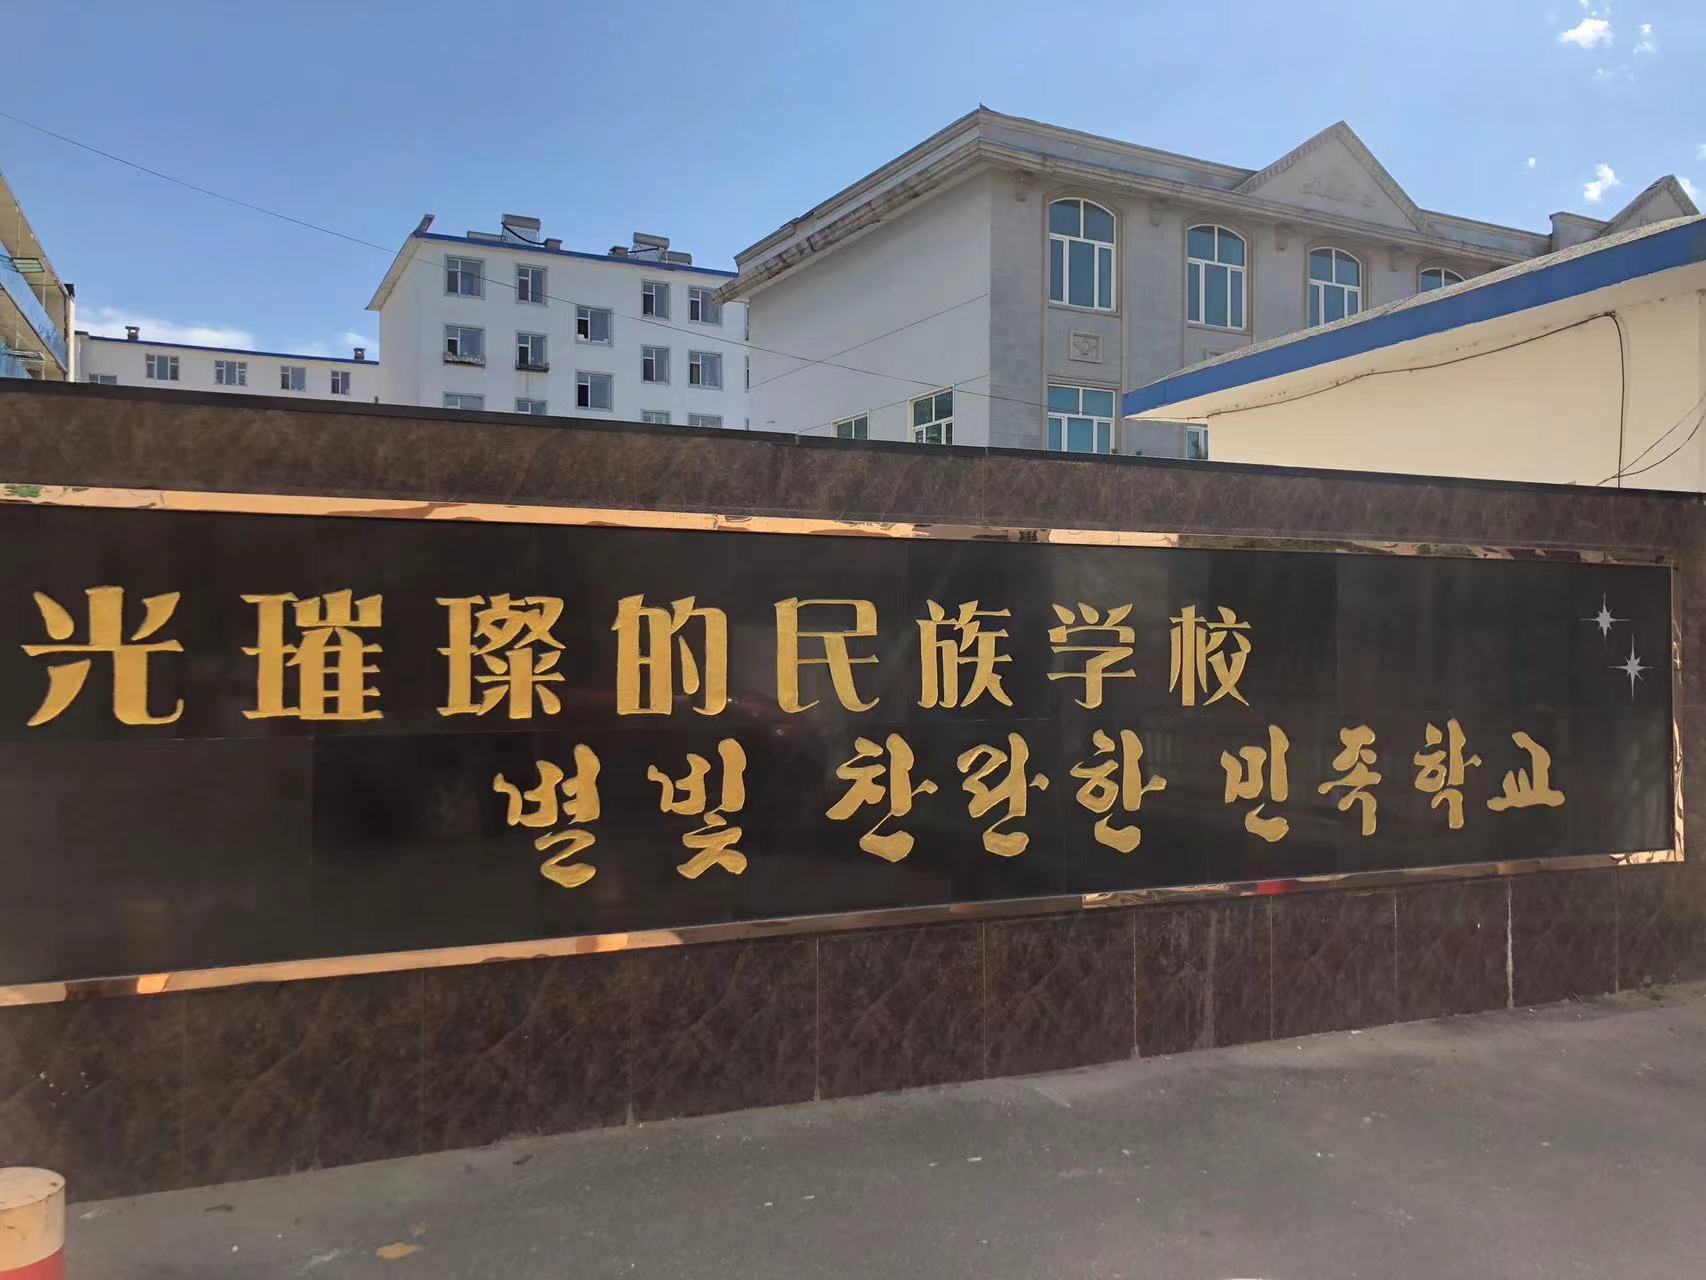 < 윤동주 시인뿐만 아니라 용정 지역에서의 독립운동 관련 자료가 전시된 별빛 찬란한 민족학교 - 출처: 통신원 촬영 >